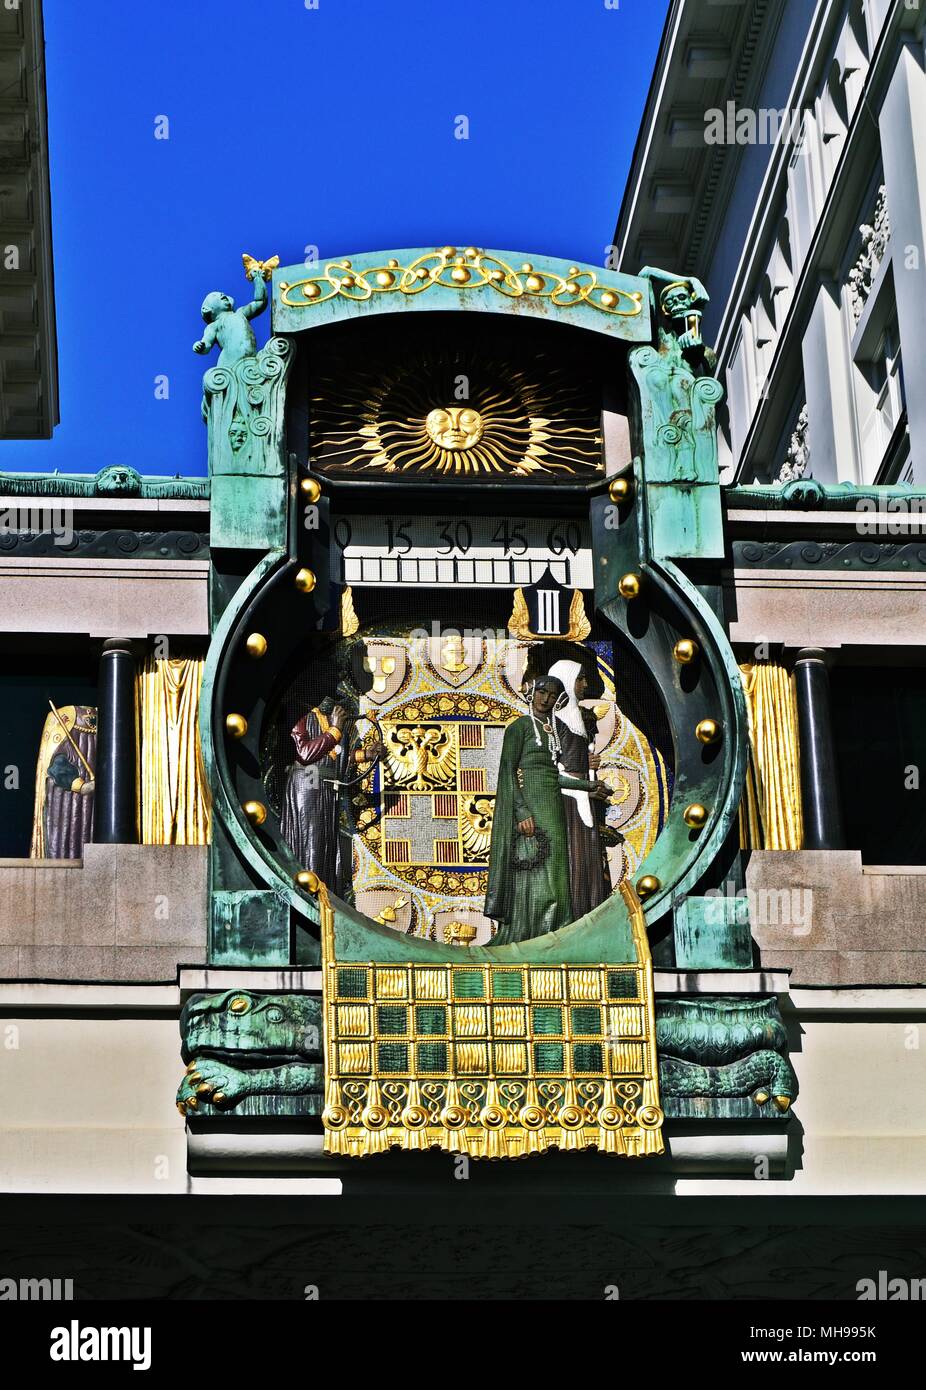 Anker Uhr a Vienna, in Austria Foto Stock